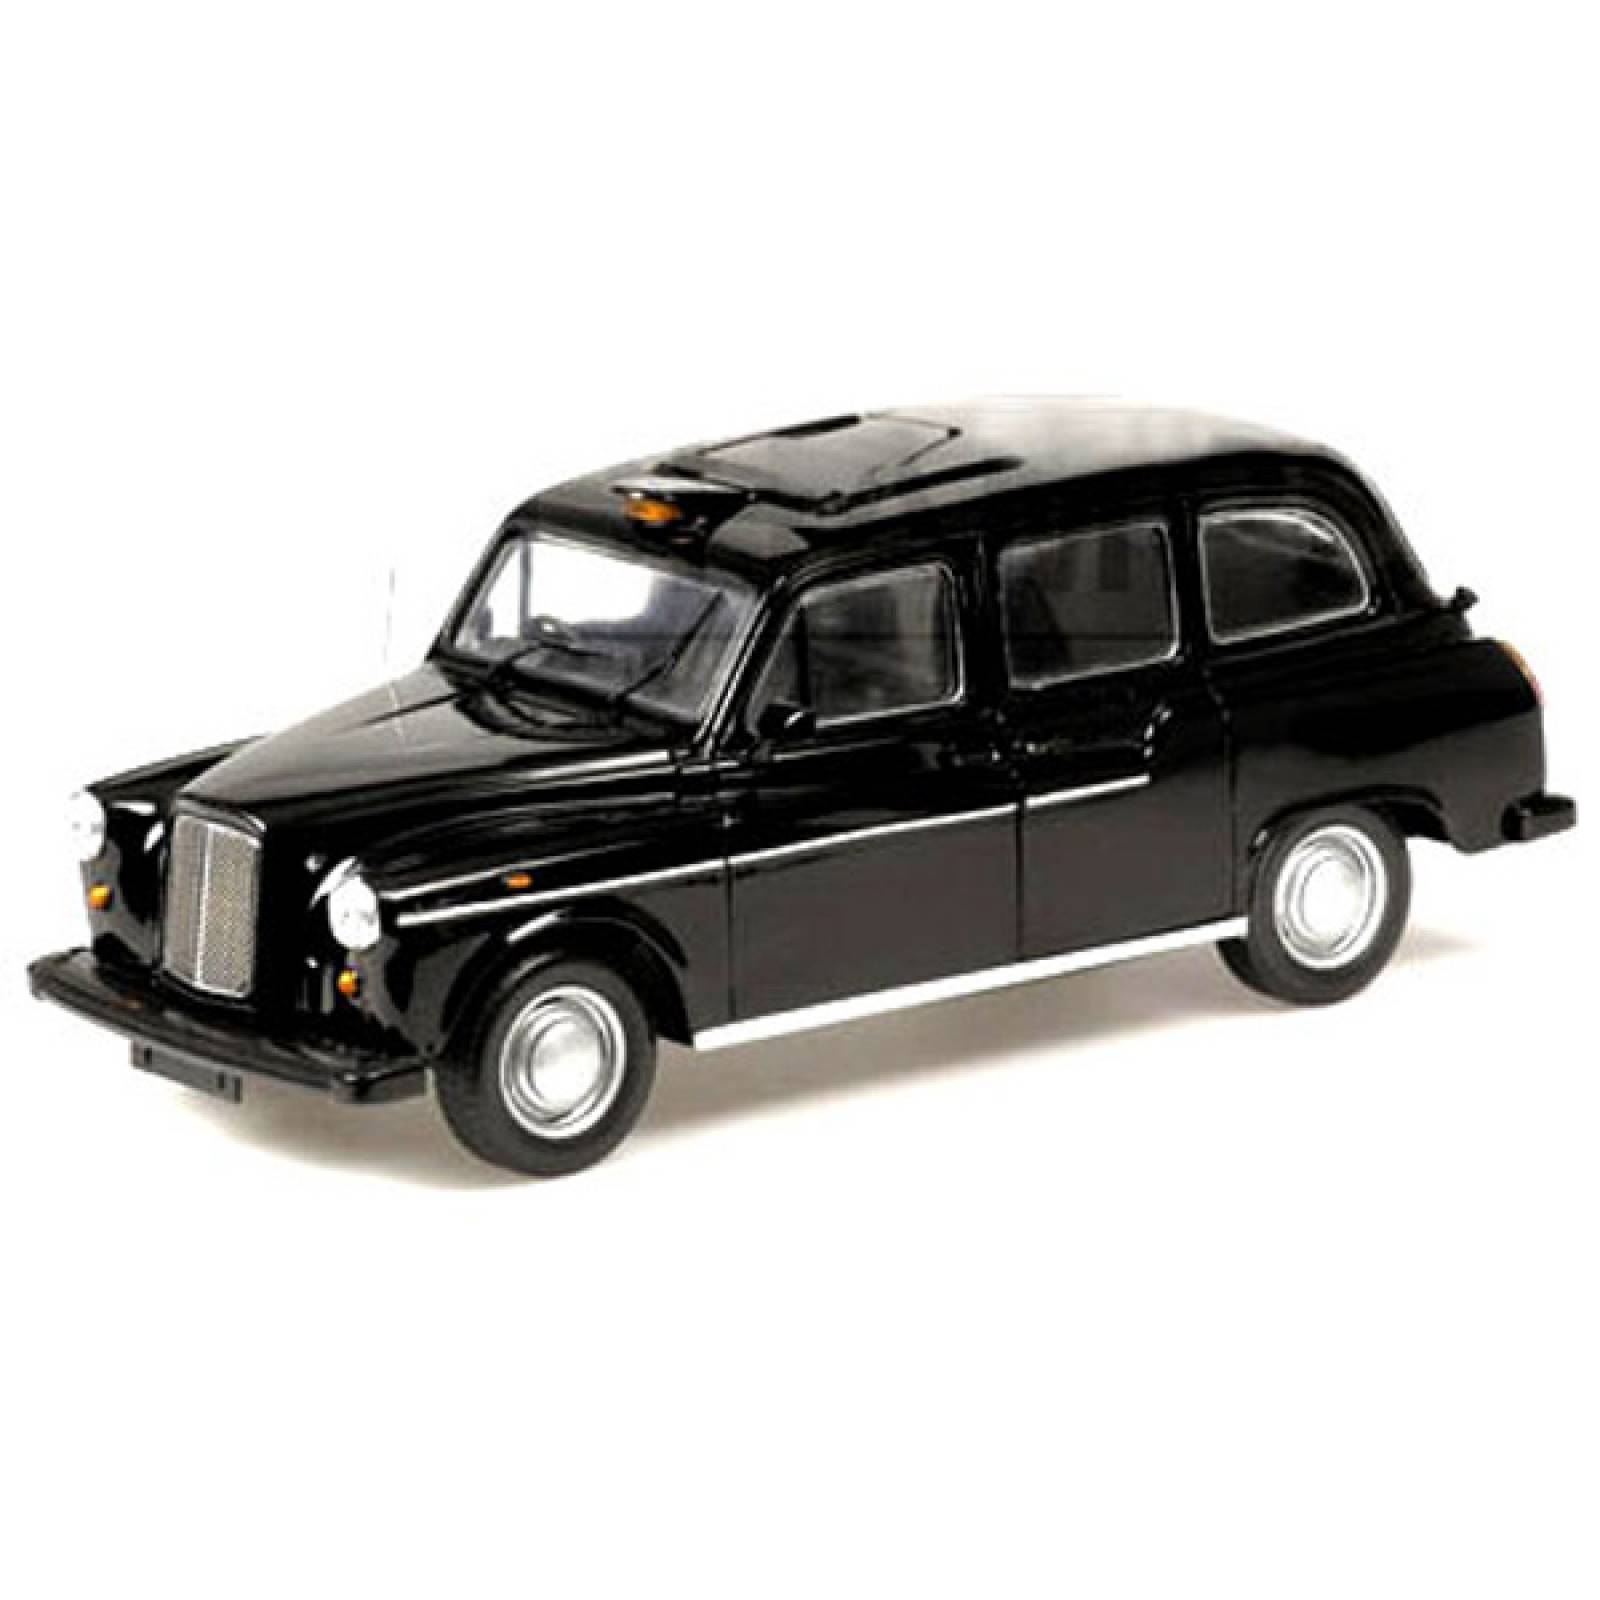 Welly London Taxi Cab Black Cab Diecast Model Car 